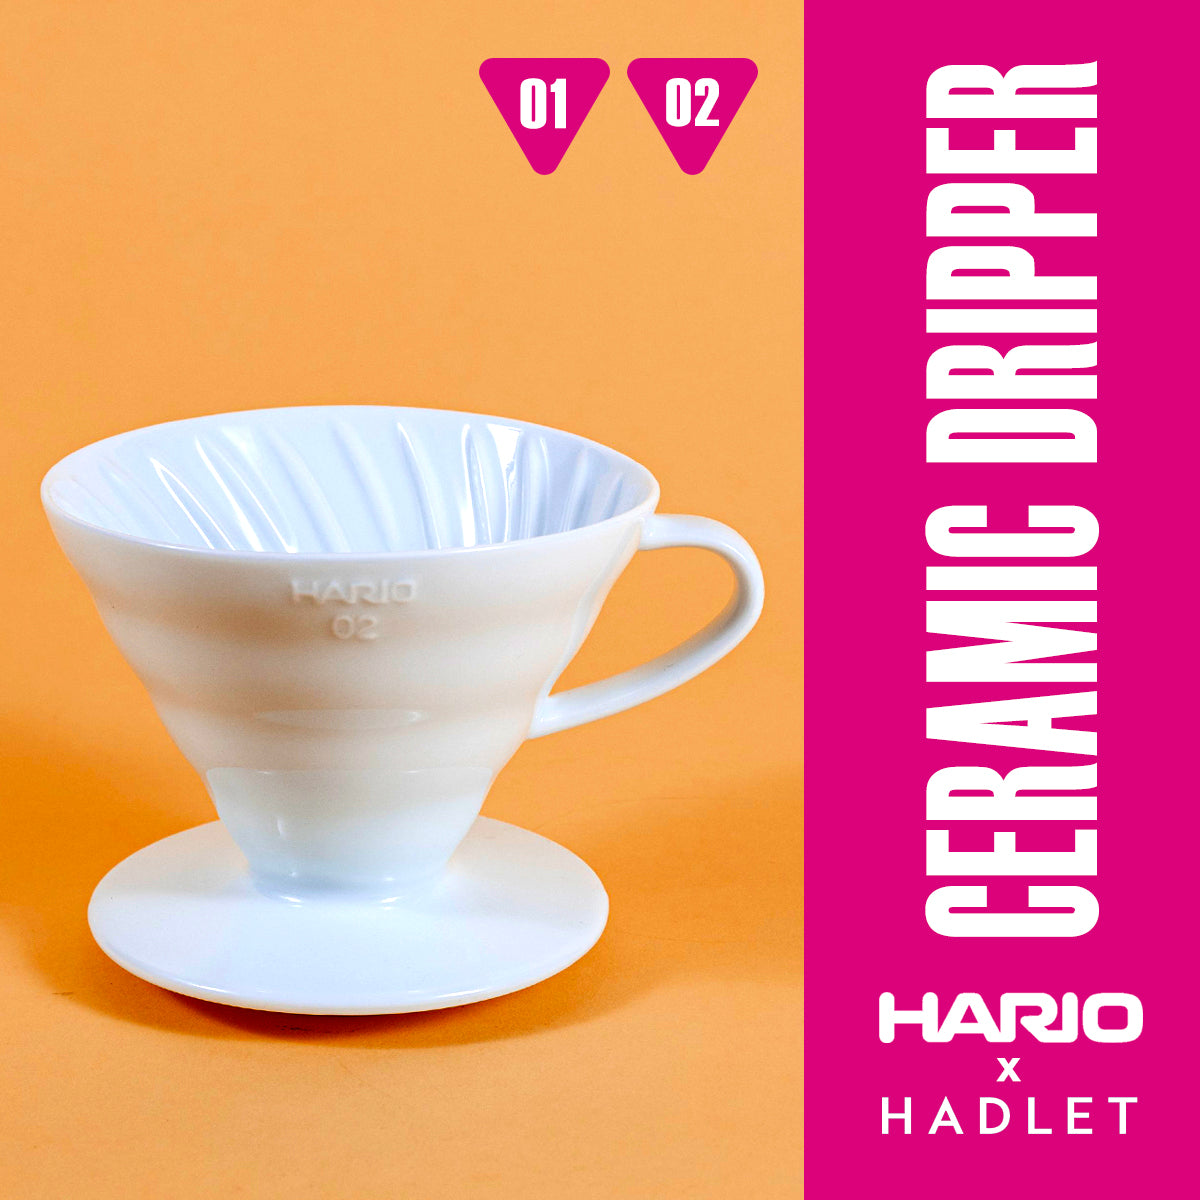 Hario V60 陶瓷咖啡滴头 红/白/黑 尺寸 01|02 